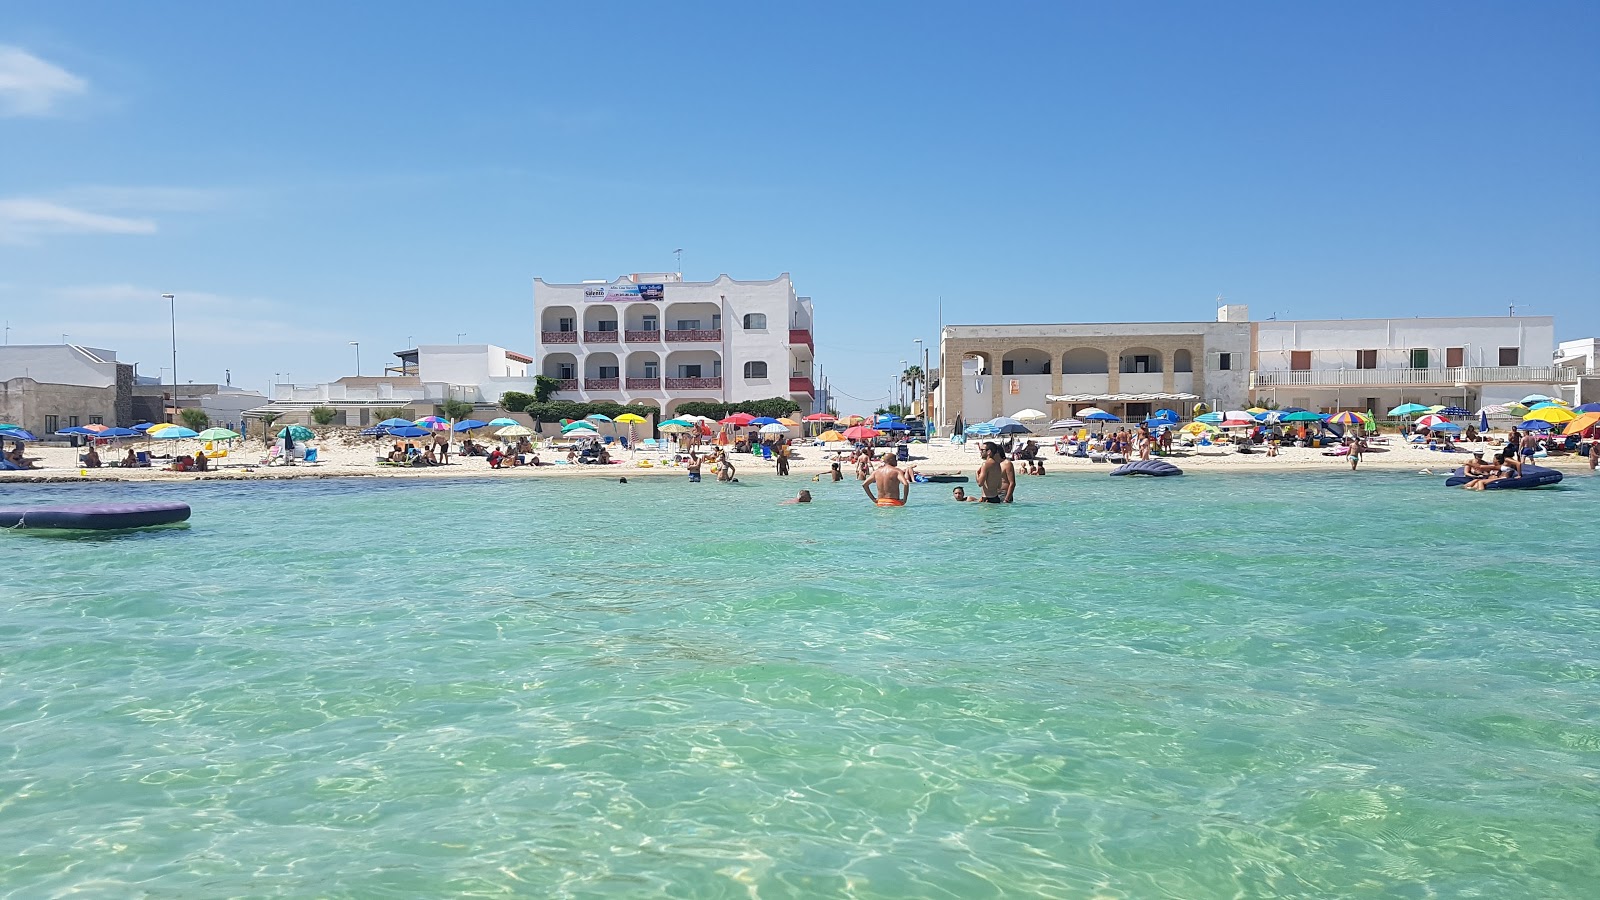 Spiaggia Porto Cesareo'in fotoğrafı geniş plaj ile birlikte